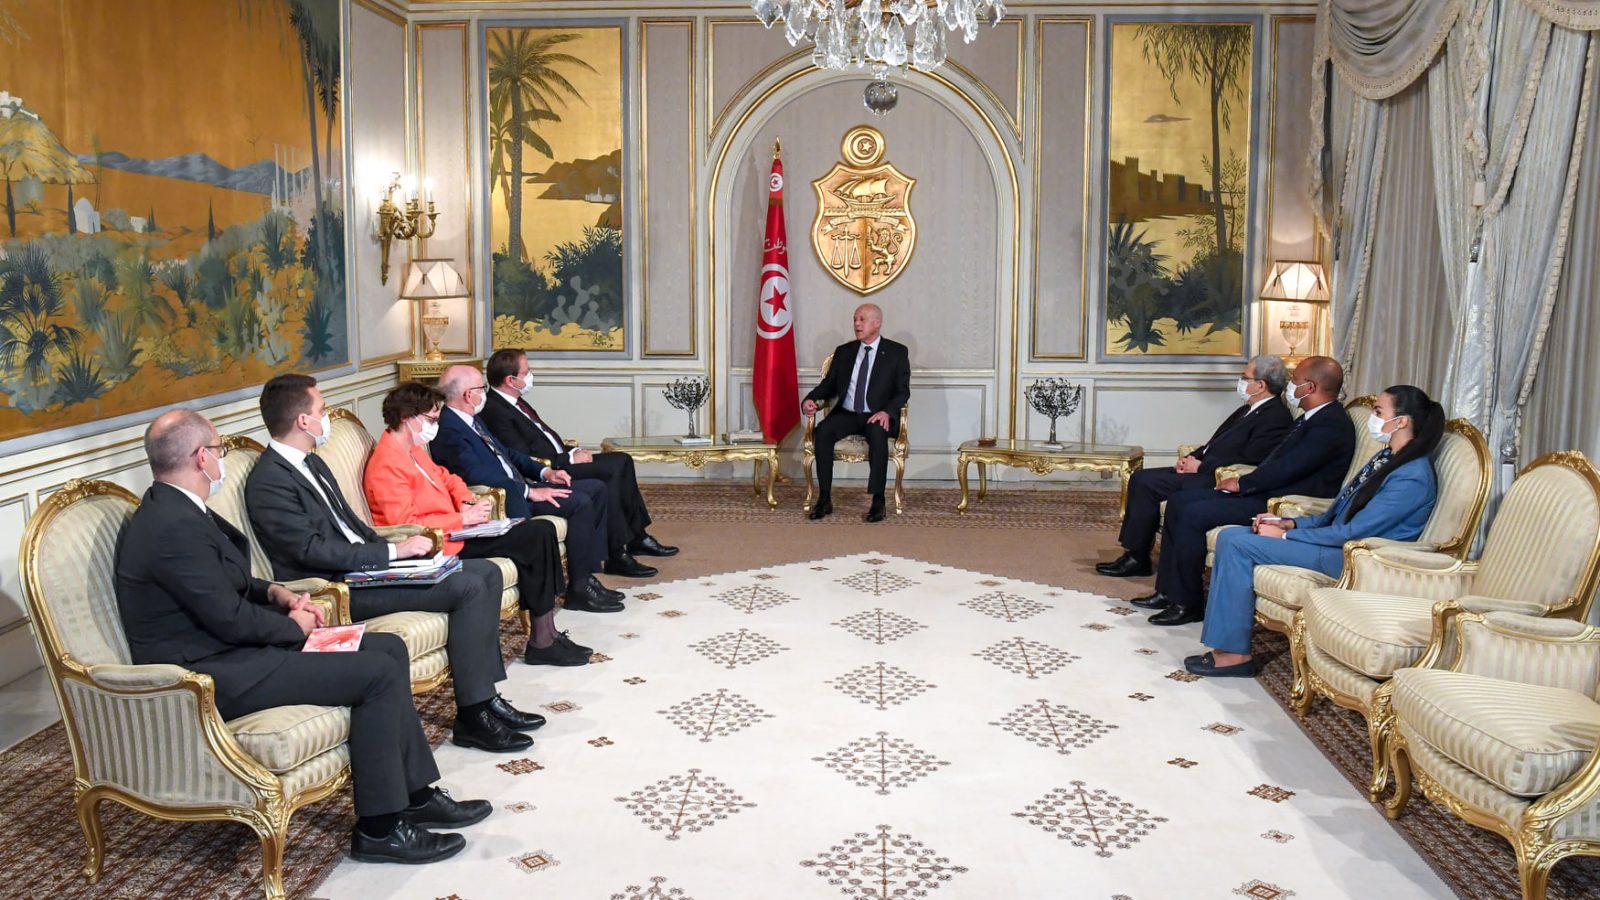 أوروبا مستعدة لمزيد دعم تونس للخروج من الأزمة الحالية (فيديو)